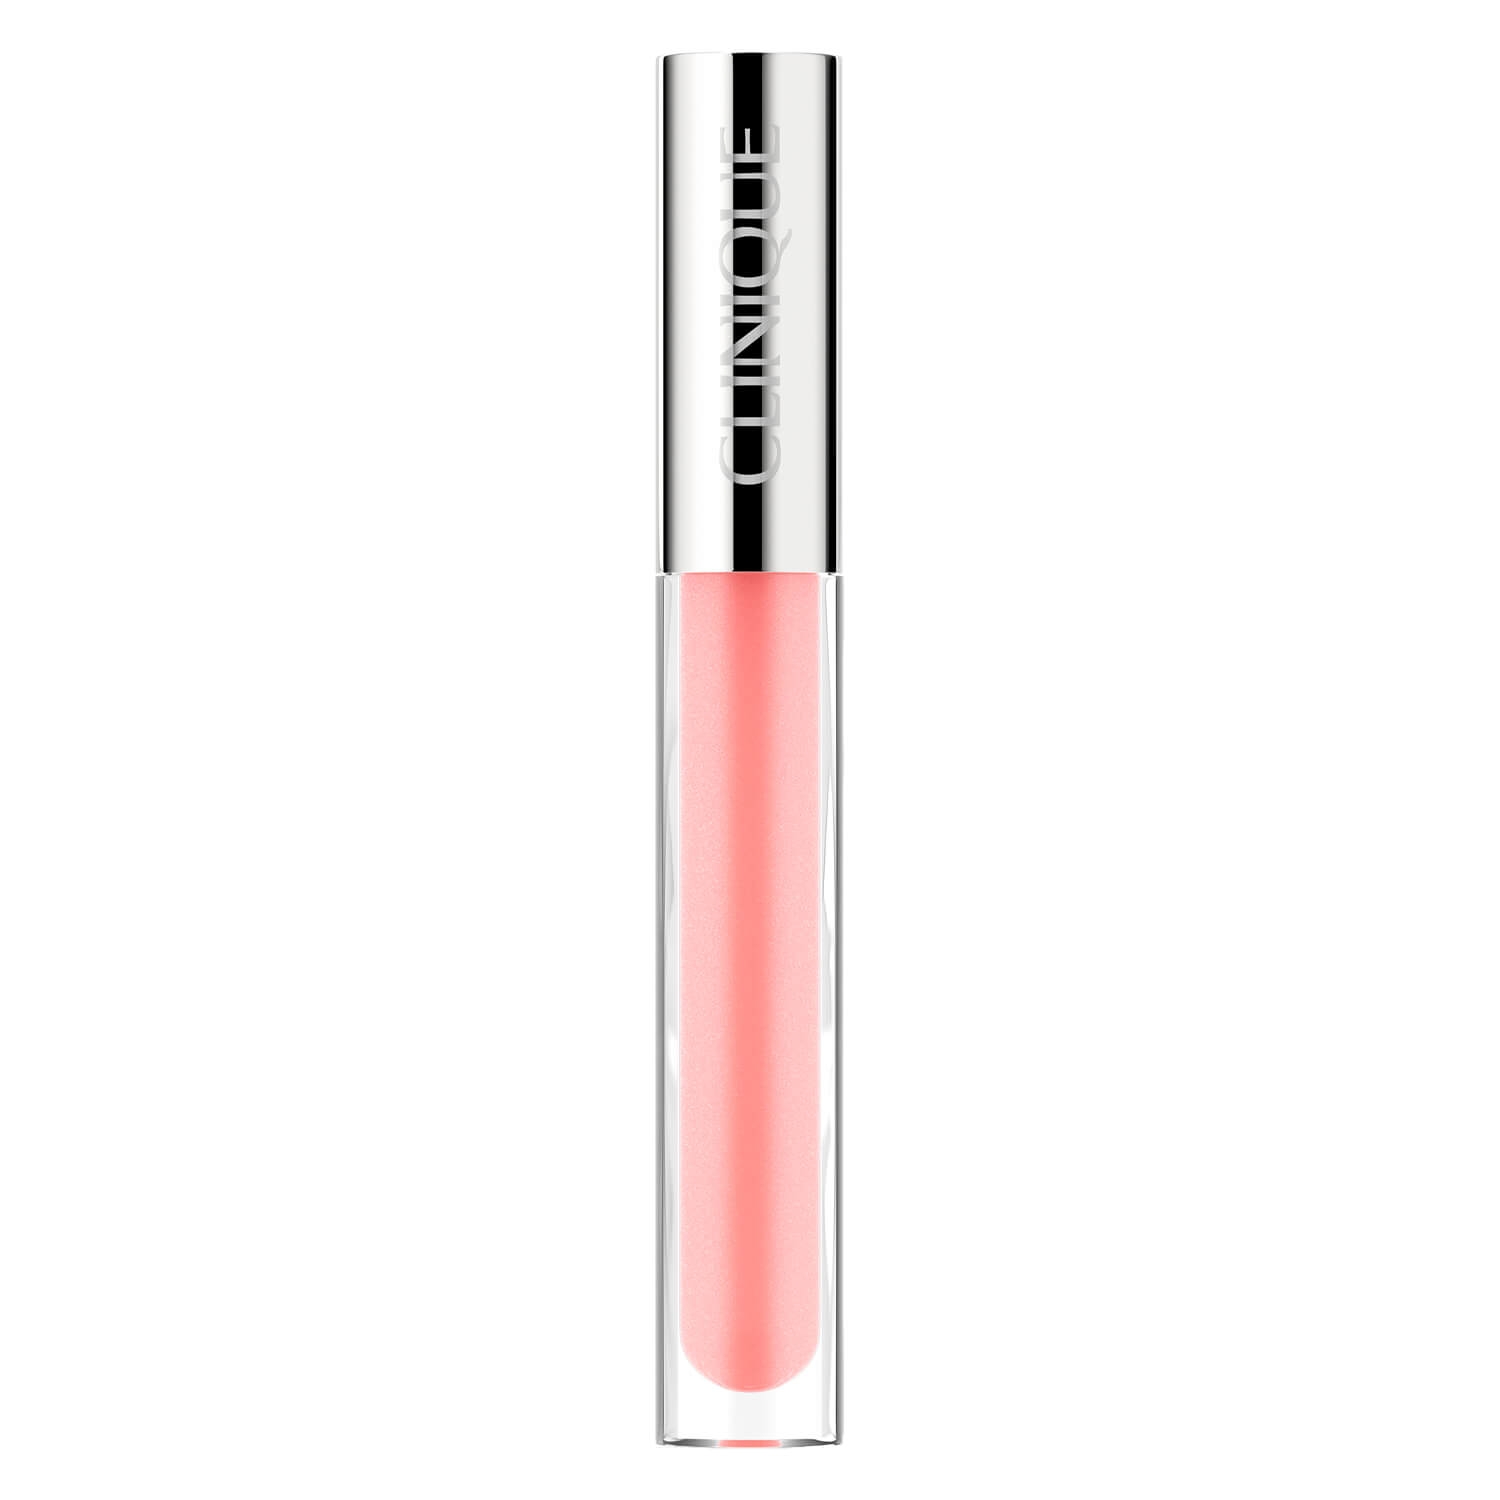 Produktbild von Clinique Lips - Pop Plush Creamy Lip Gloss 07 Airkiss Pop